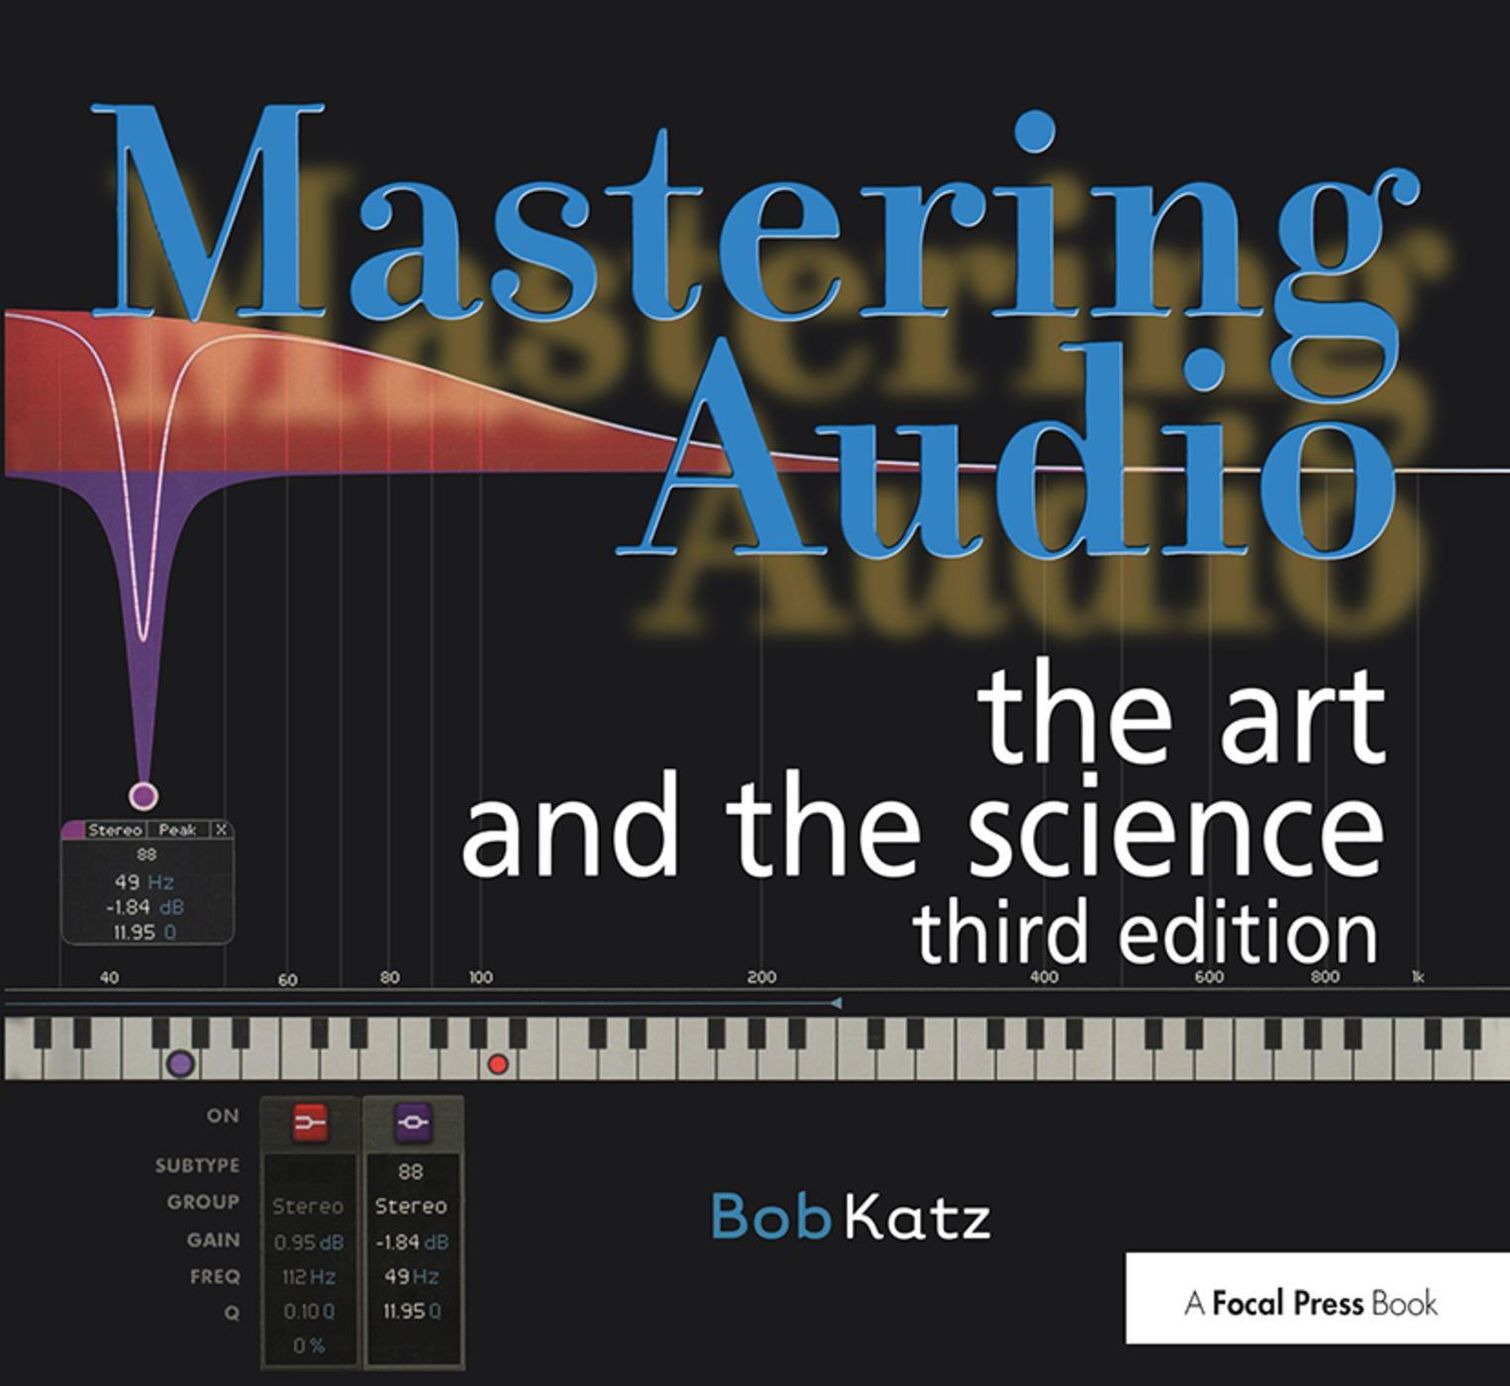 Mastering Audio Buch von Bob Katz versandkostenfrei bei Weltbild.at